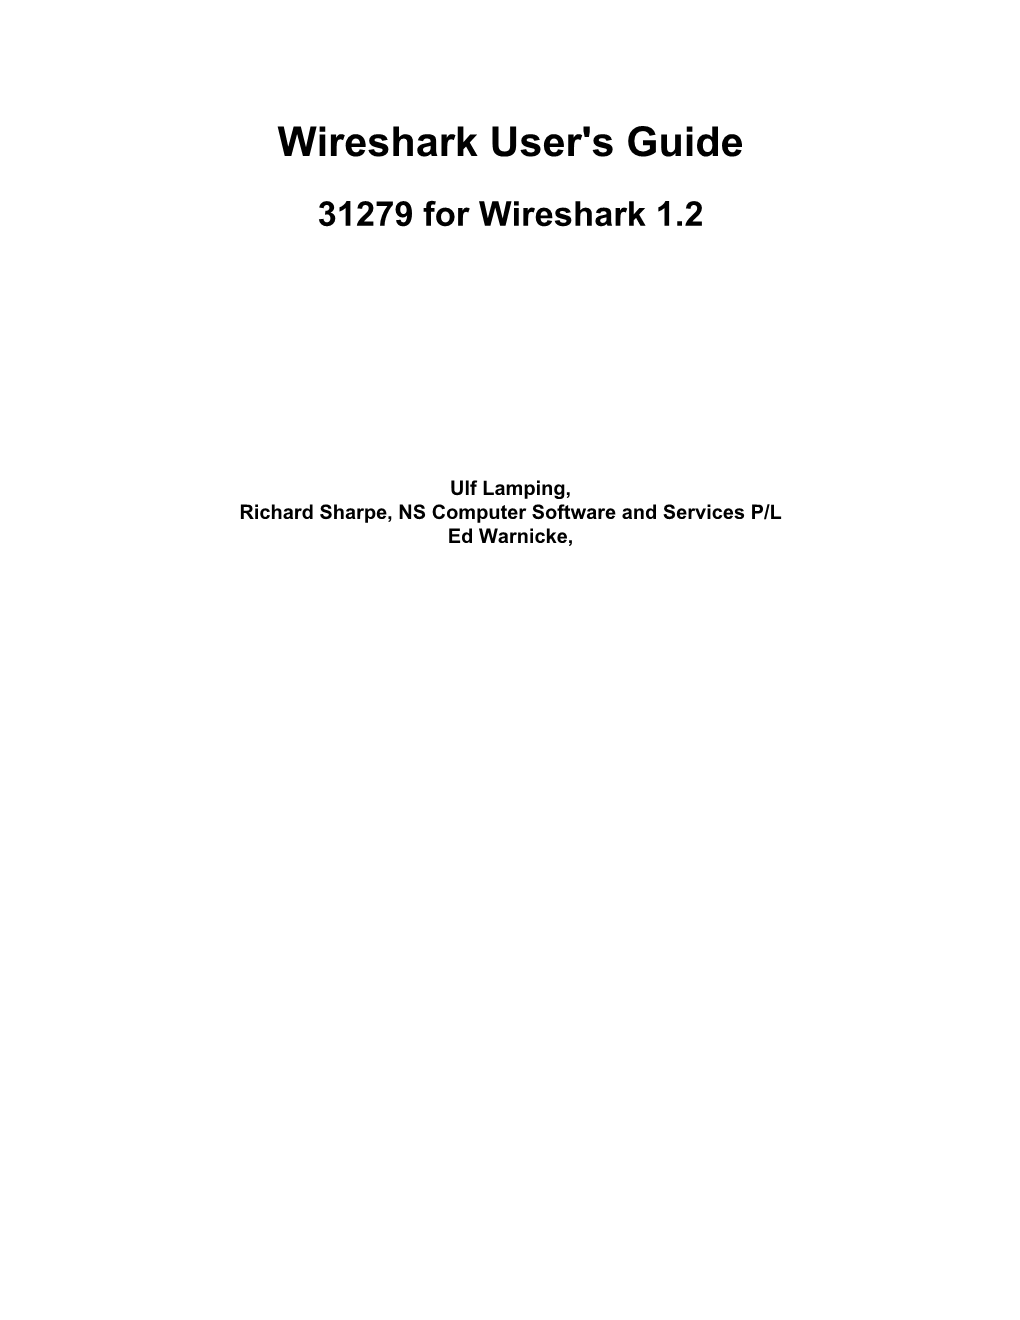 Wireshark User's Guide 31279 for Wireshark 1.2